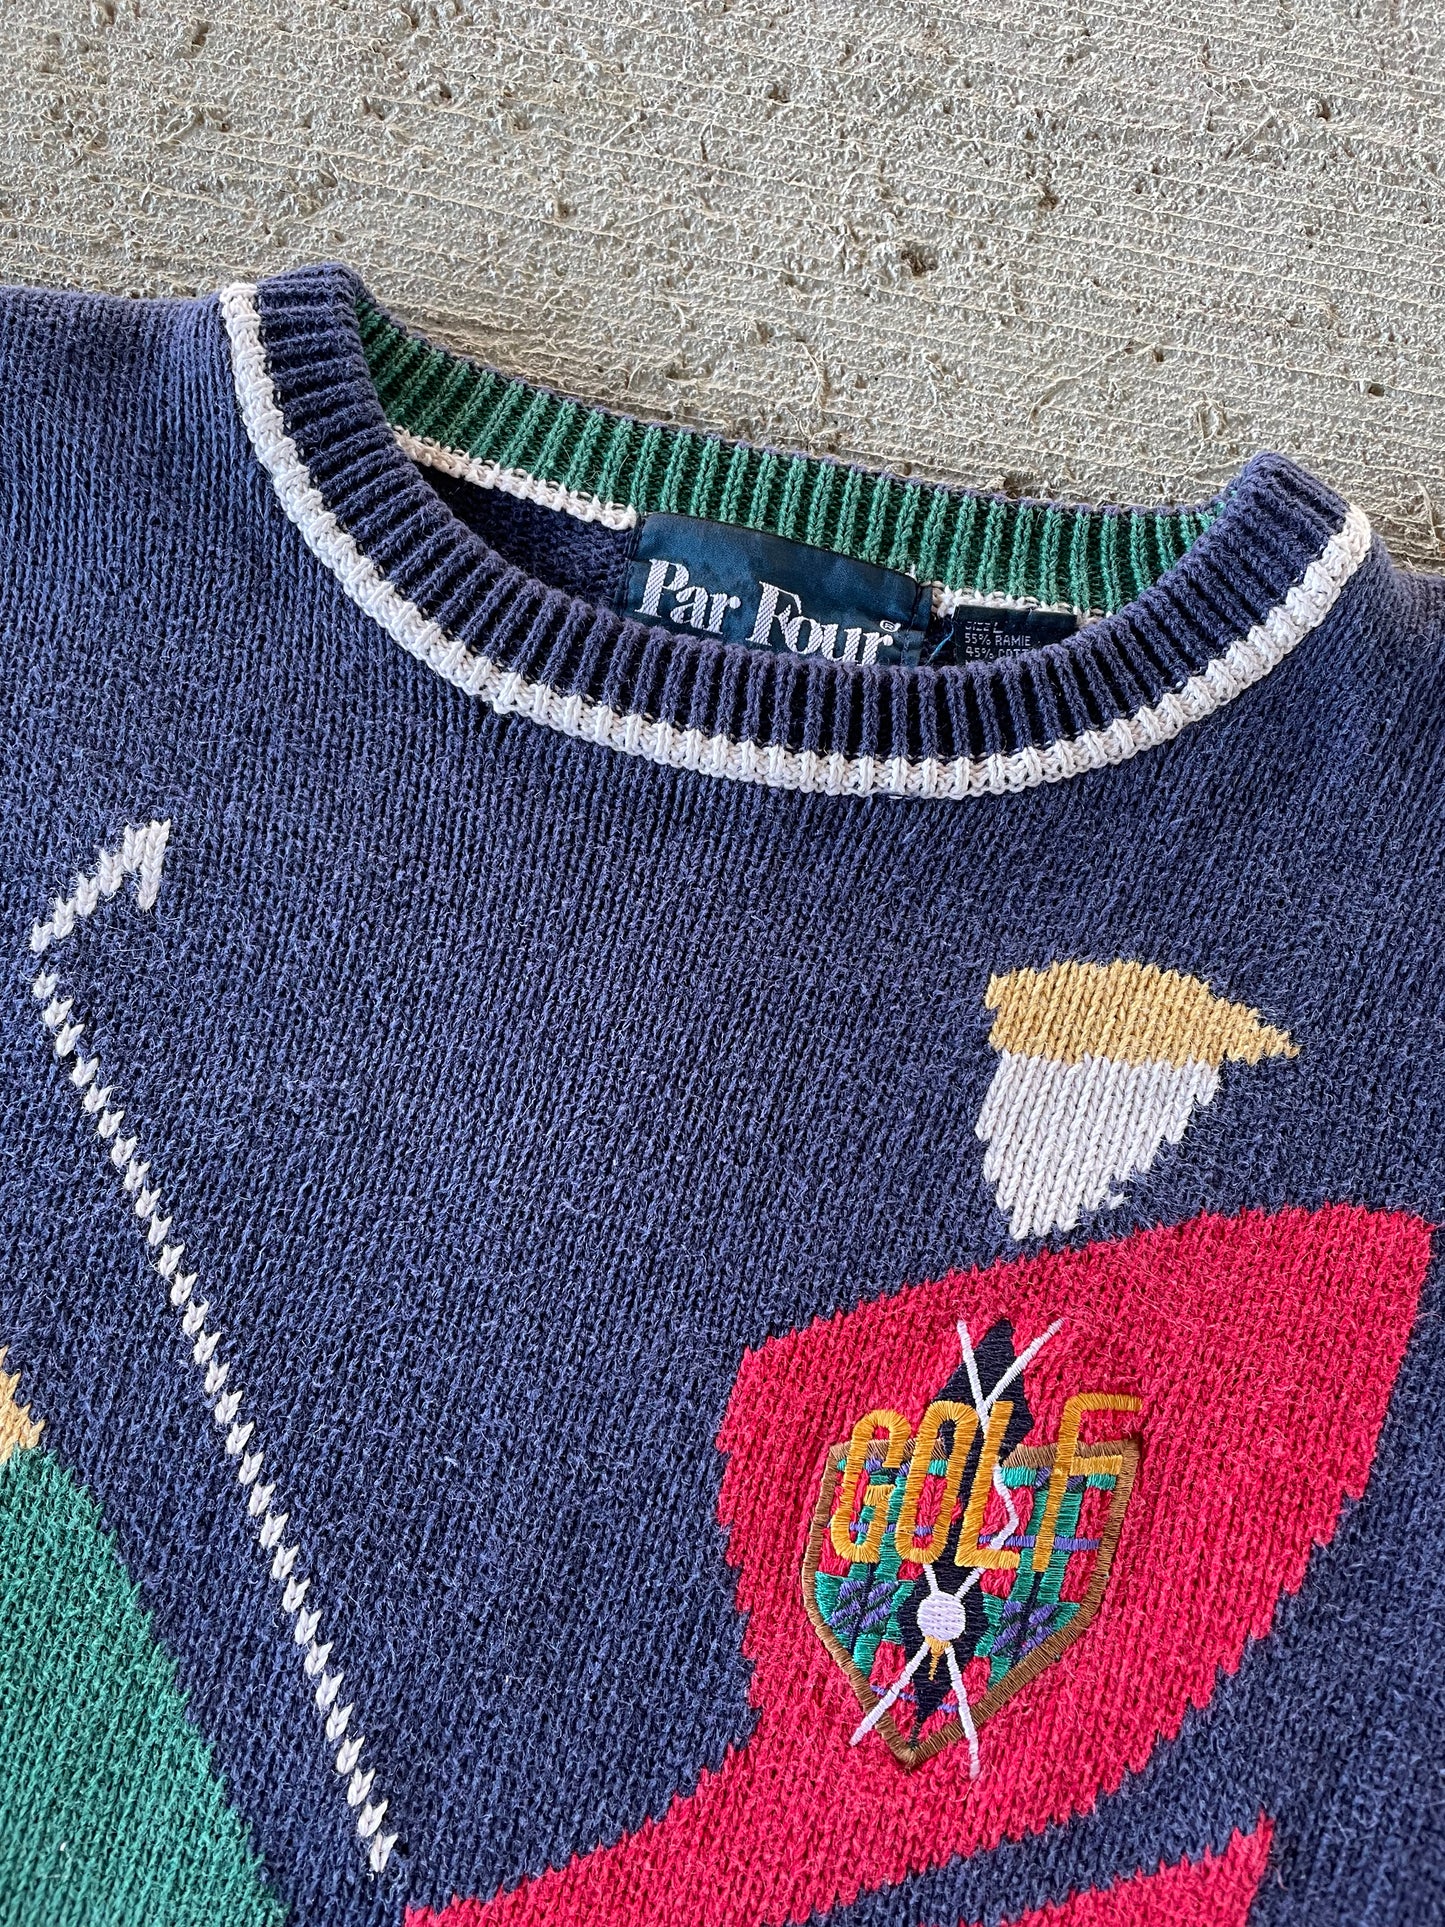 90s Par Four Golf Sweater